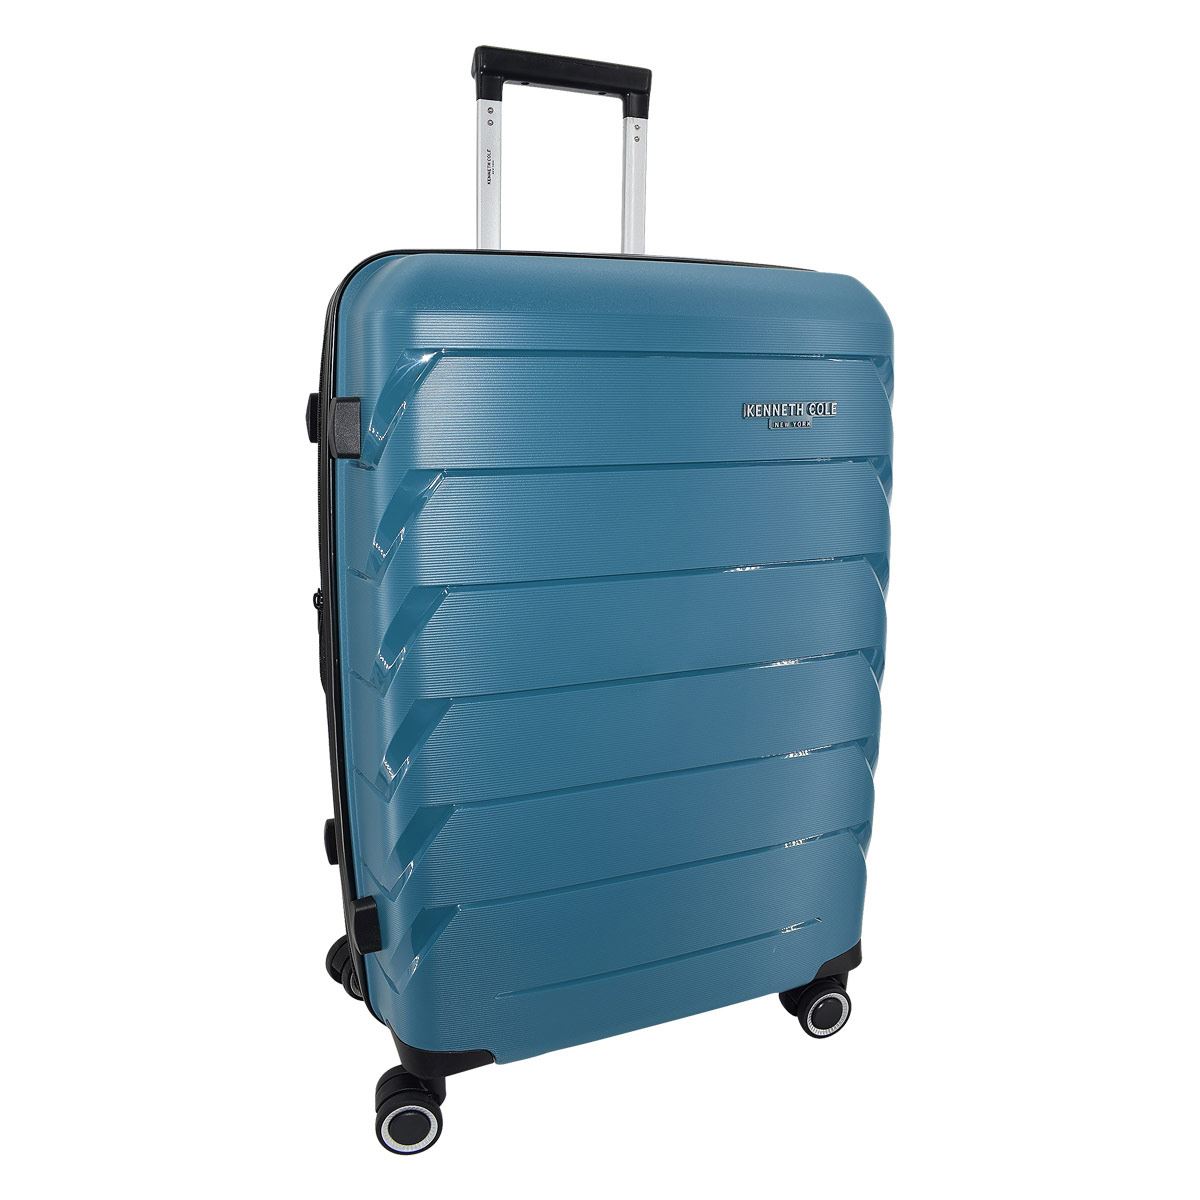 Maleta azul turquesa: ¿Dónde puedo encontrar una maleta de este color?